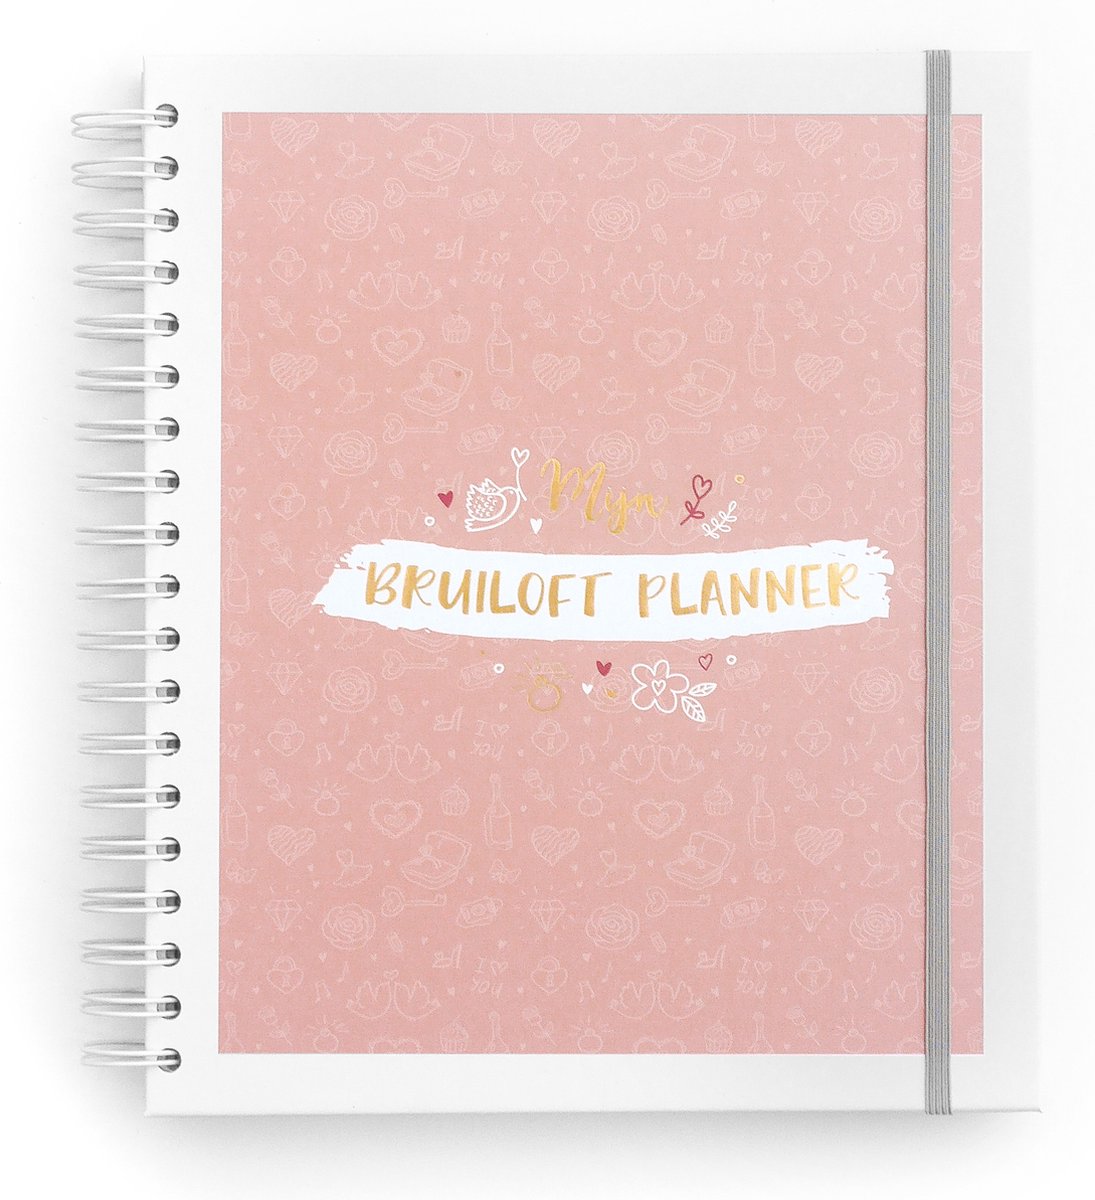 Maan Amsterdam Bruiloft Planner - Invulboek en planner voor álles rondom jouw bruiloft - Wedding planner - Maan Amsterdam